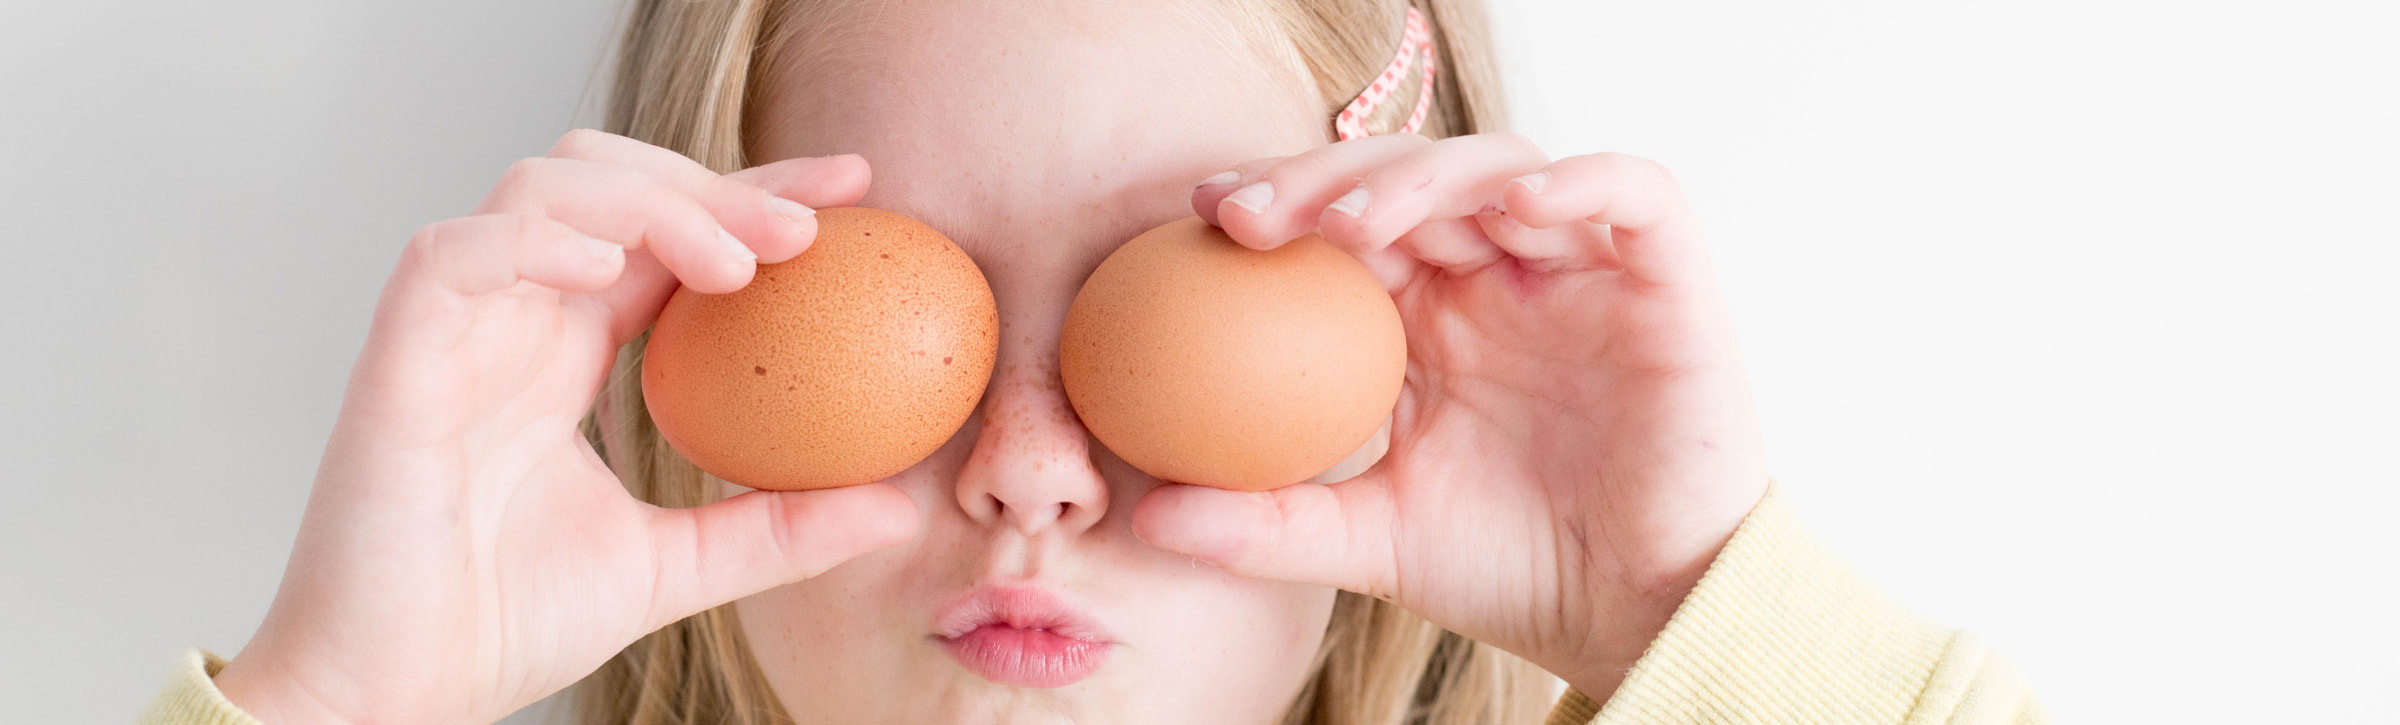 Kind hällt sich Eier vor die Augen - Götz Rezepte - mehr als nur Puppen